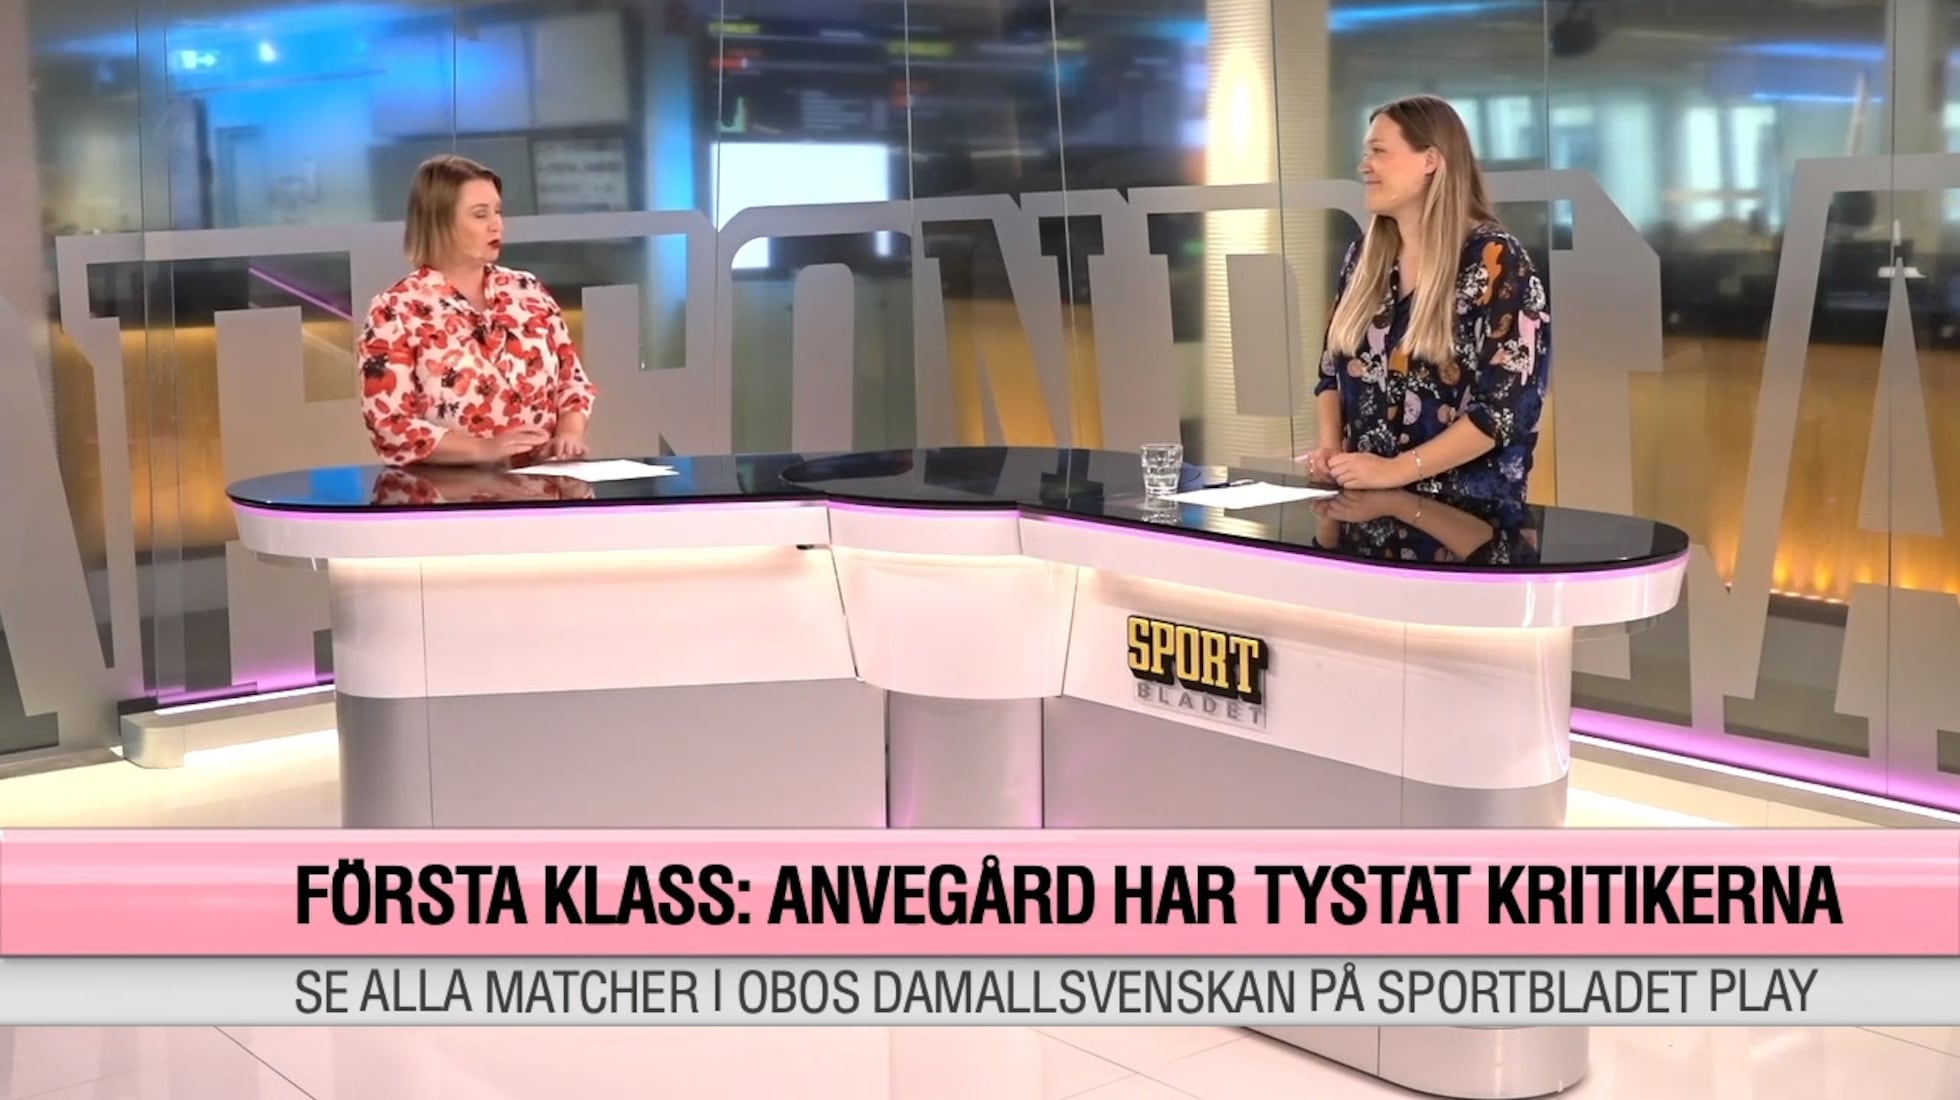 Djurgården Fotboll: Segertåget: Har Anvegård tystat kritikerna nu?